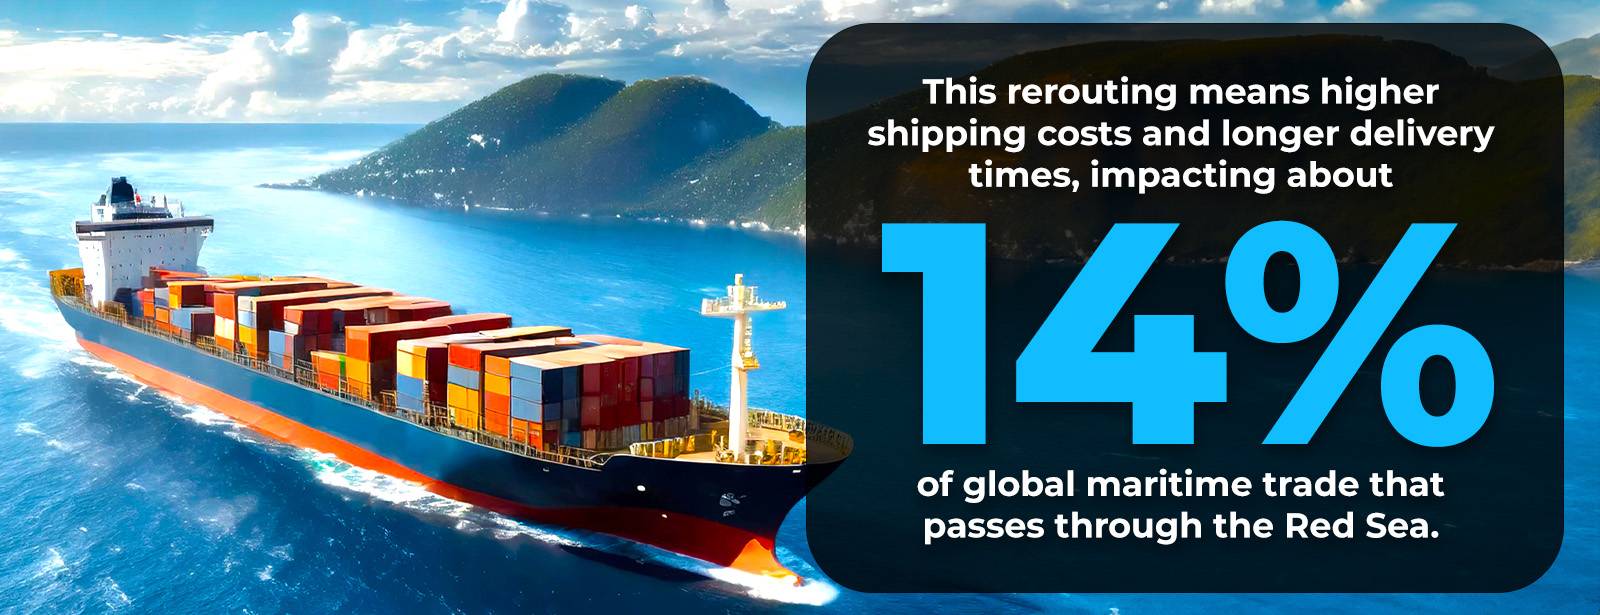 Zaradi napadov v Rdečem morju so zaradi daljših poti prizadete 14 % svetovne trgovine